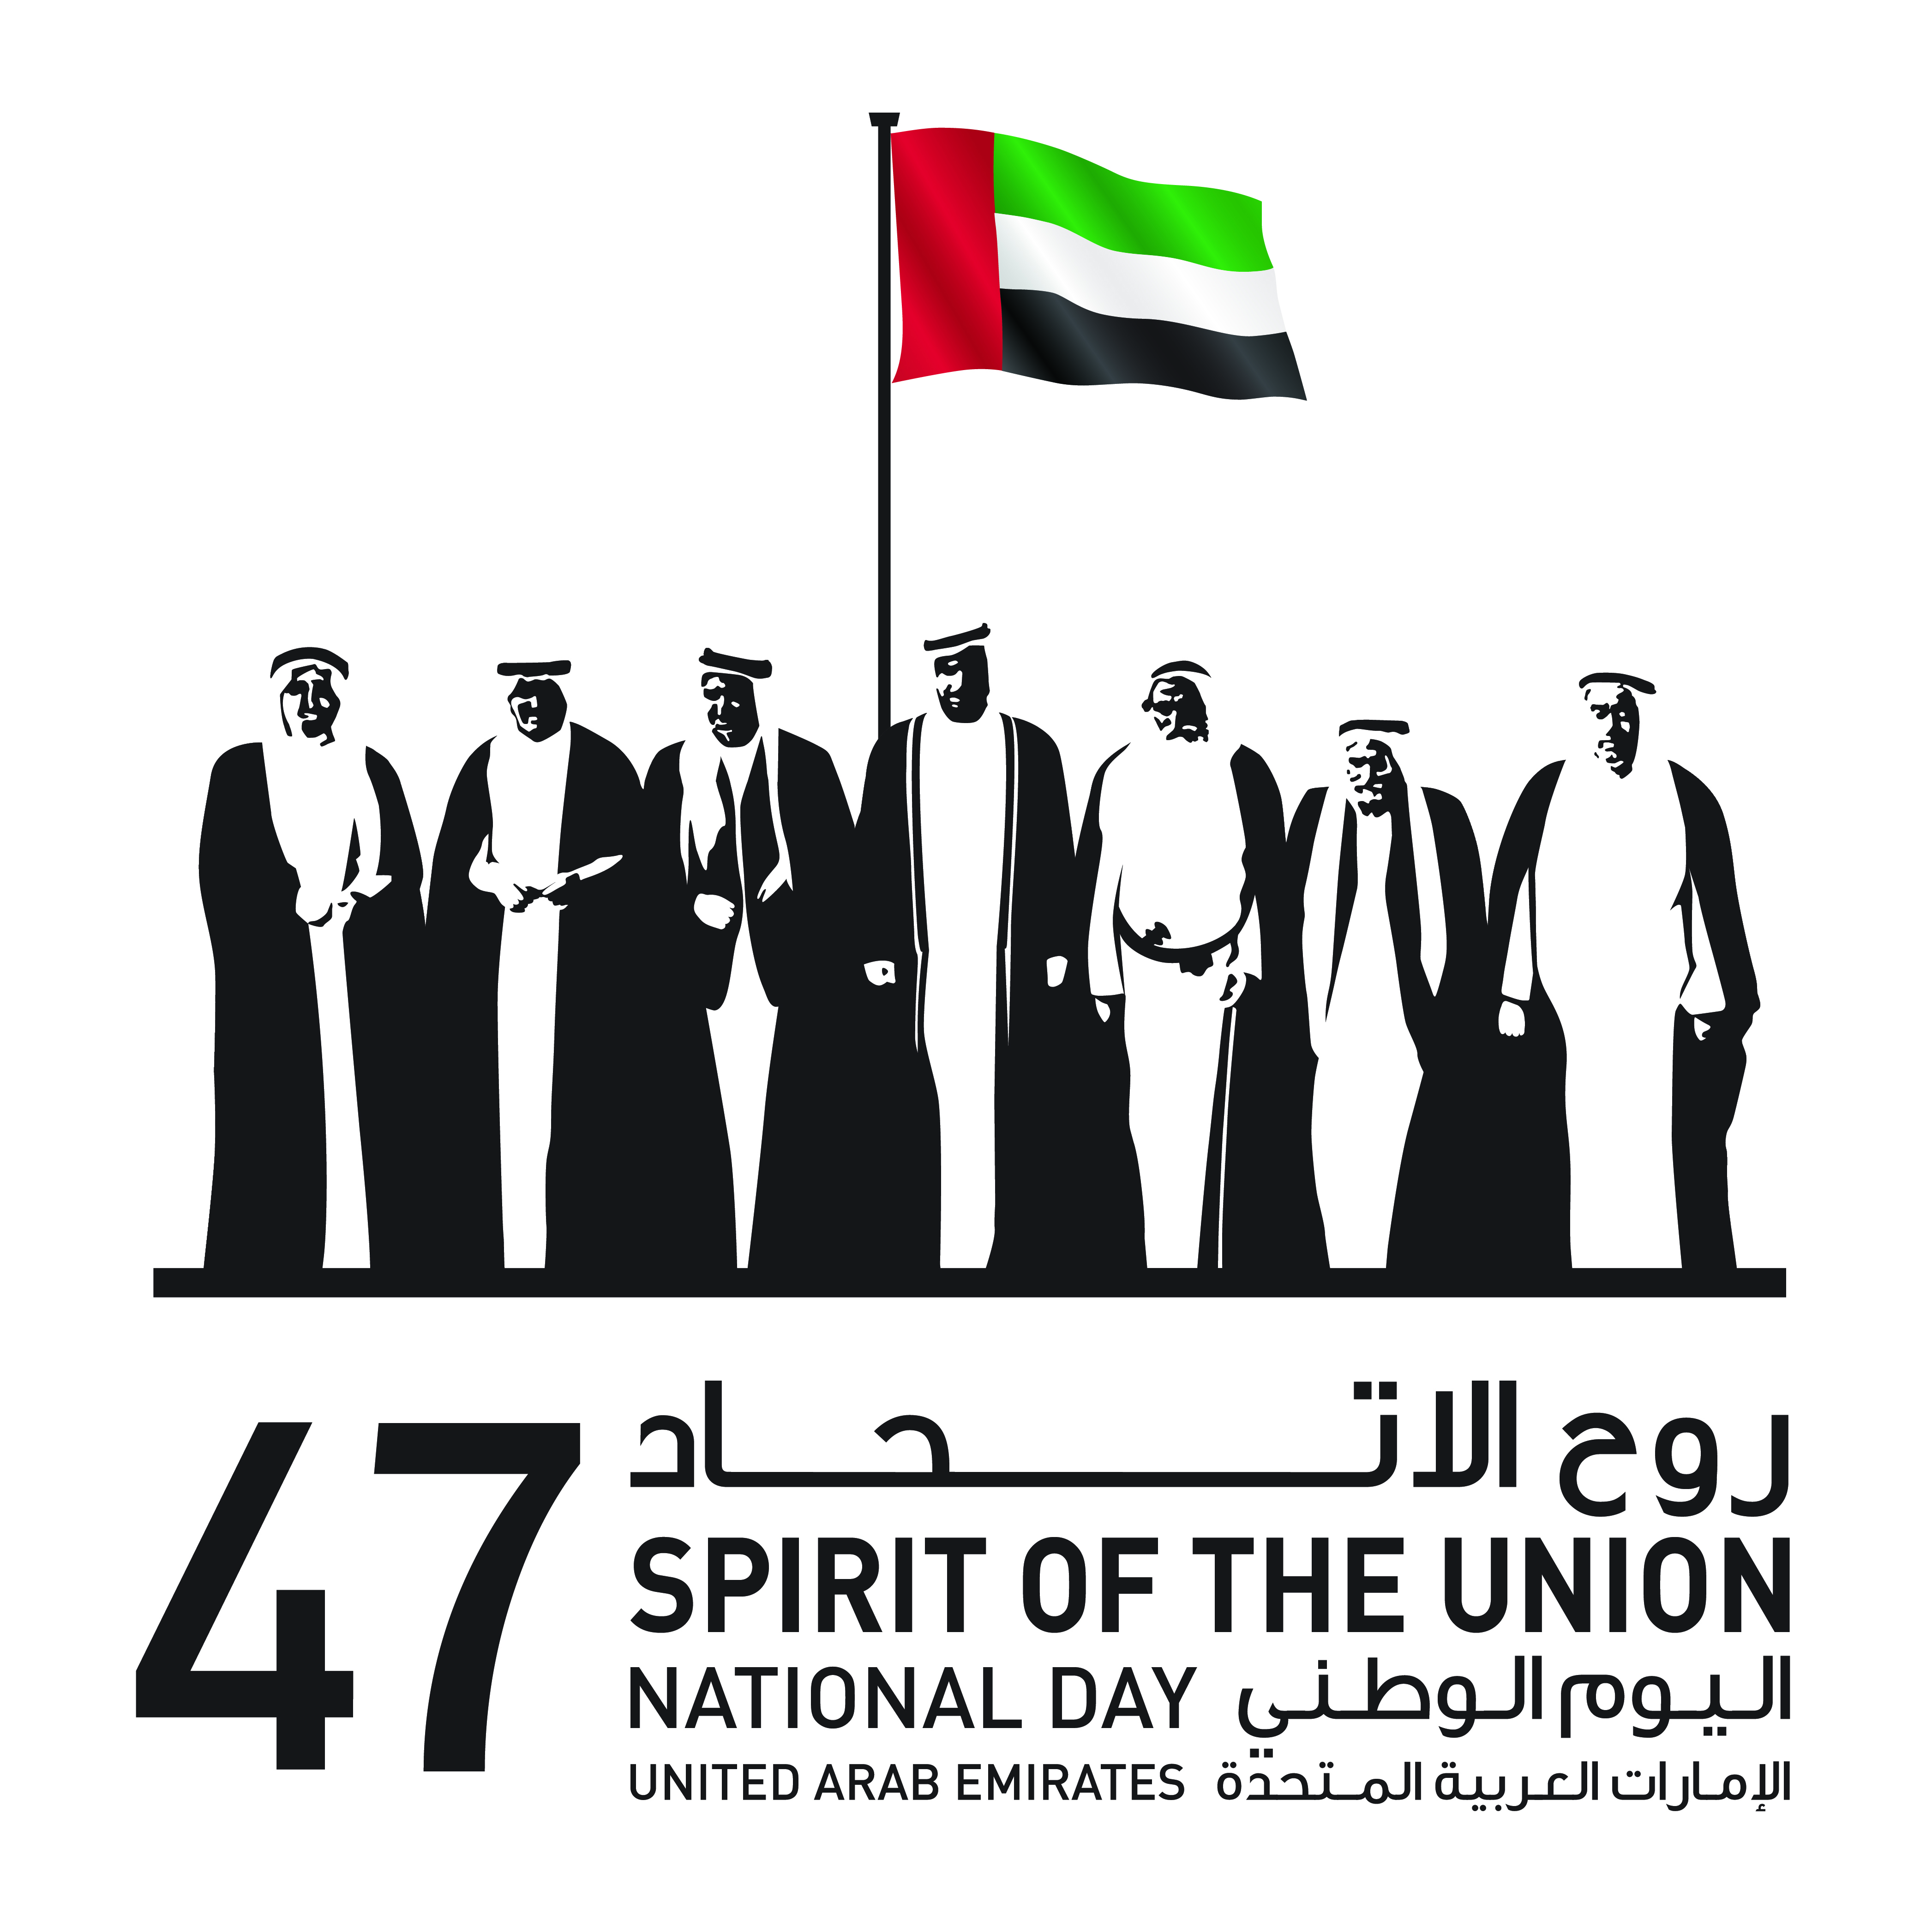 روح الاتحاد - جامعة العين - اليوم الوطني